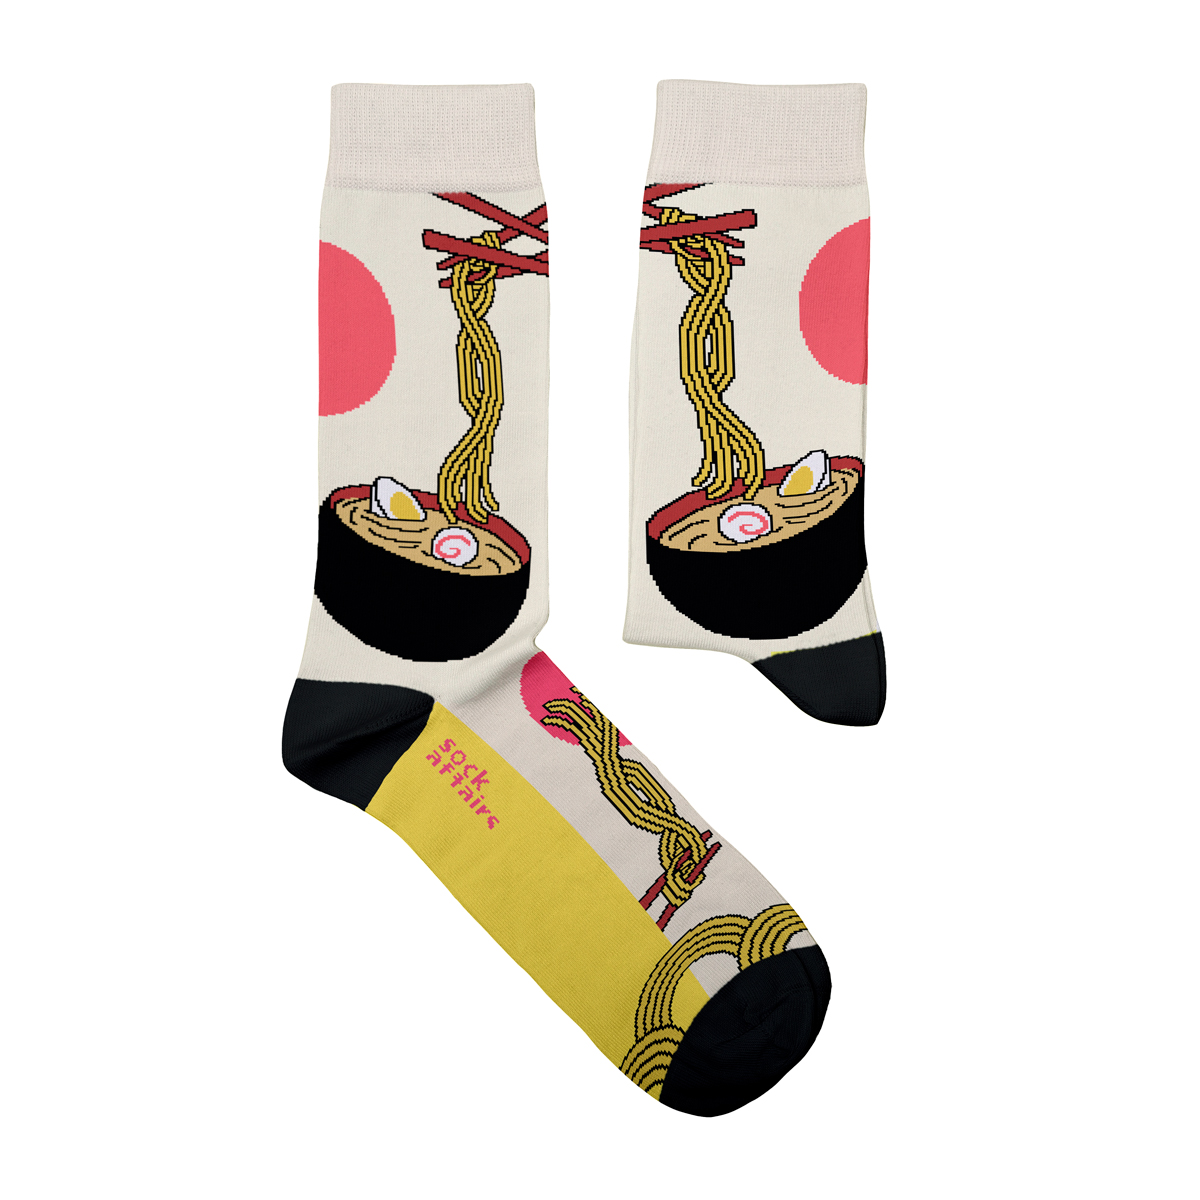 Ramen Socks via #linkinbio

Fun for passionate people.

#funsocks #sockaffairs #artsocks #musicsocks #motorsocks #heeltread #curatorsocks #sushi socks #foodsocks